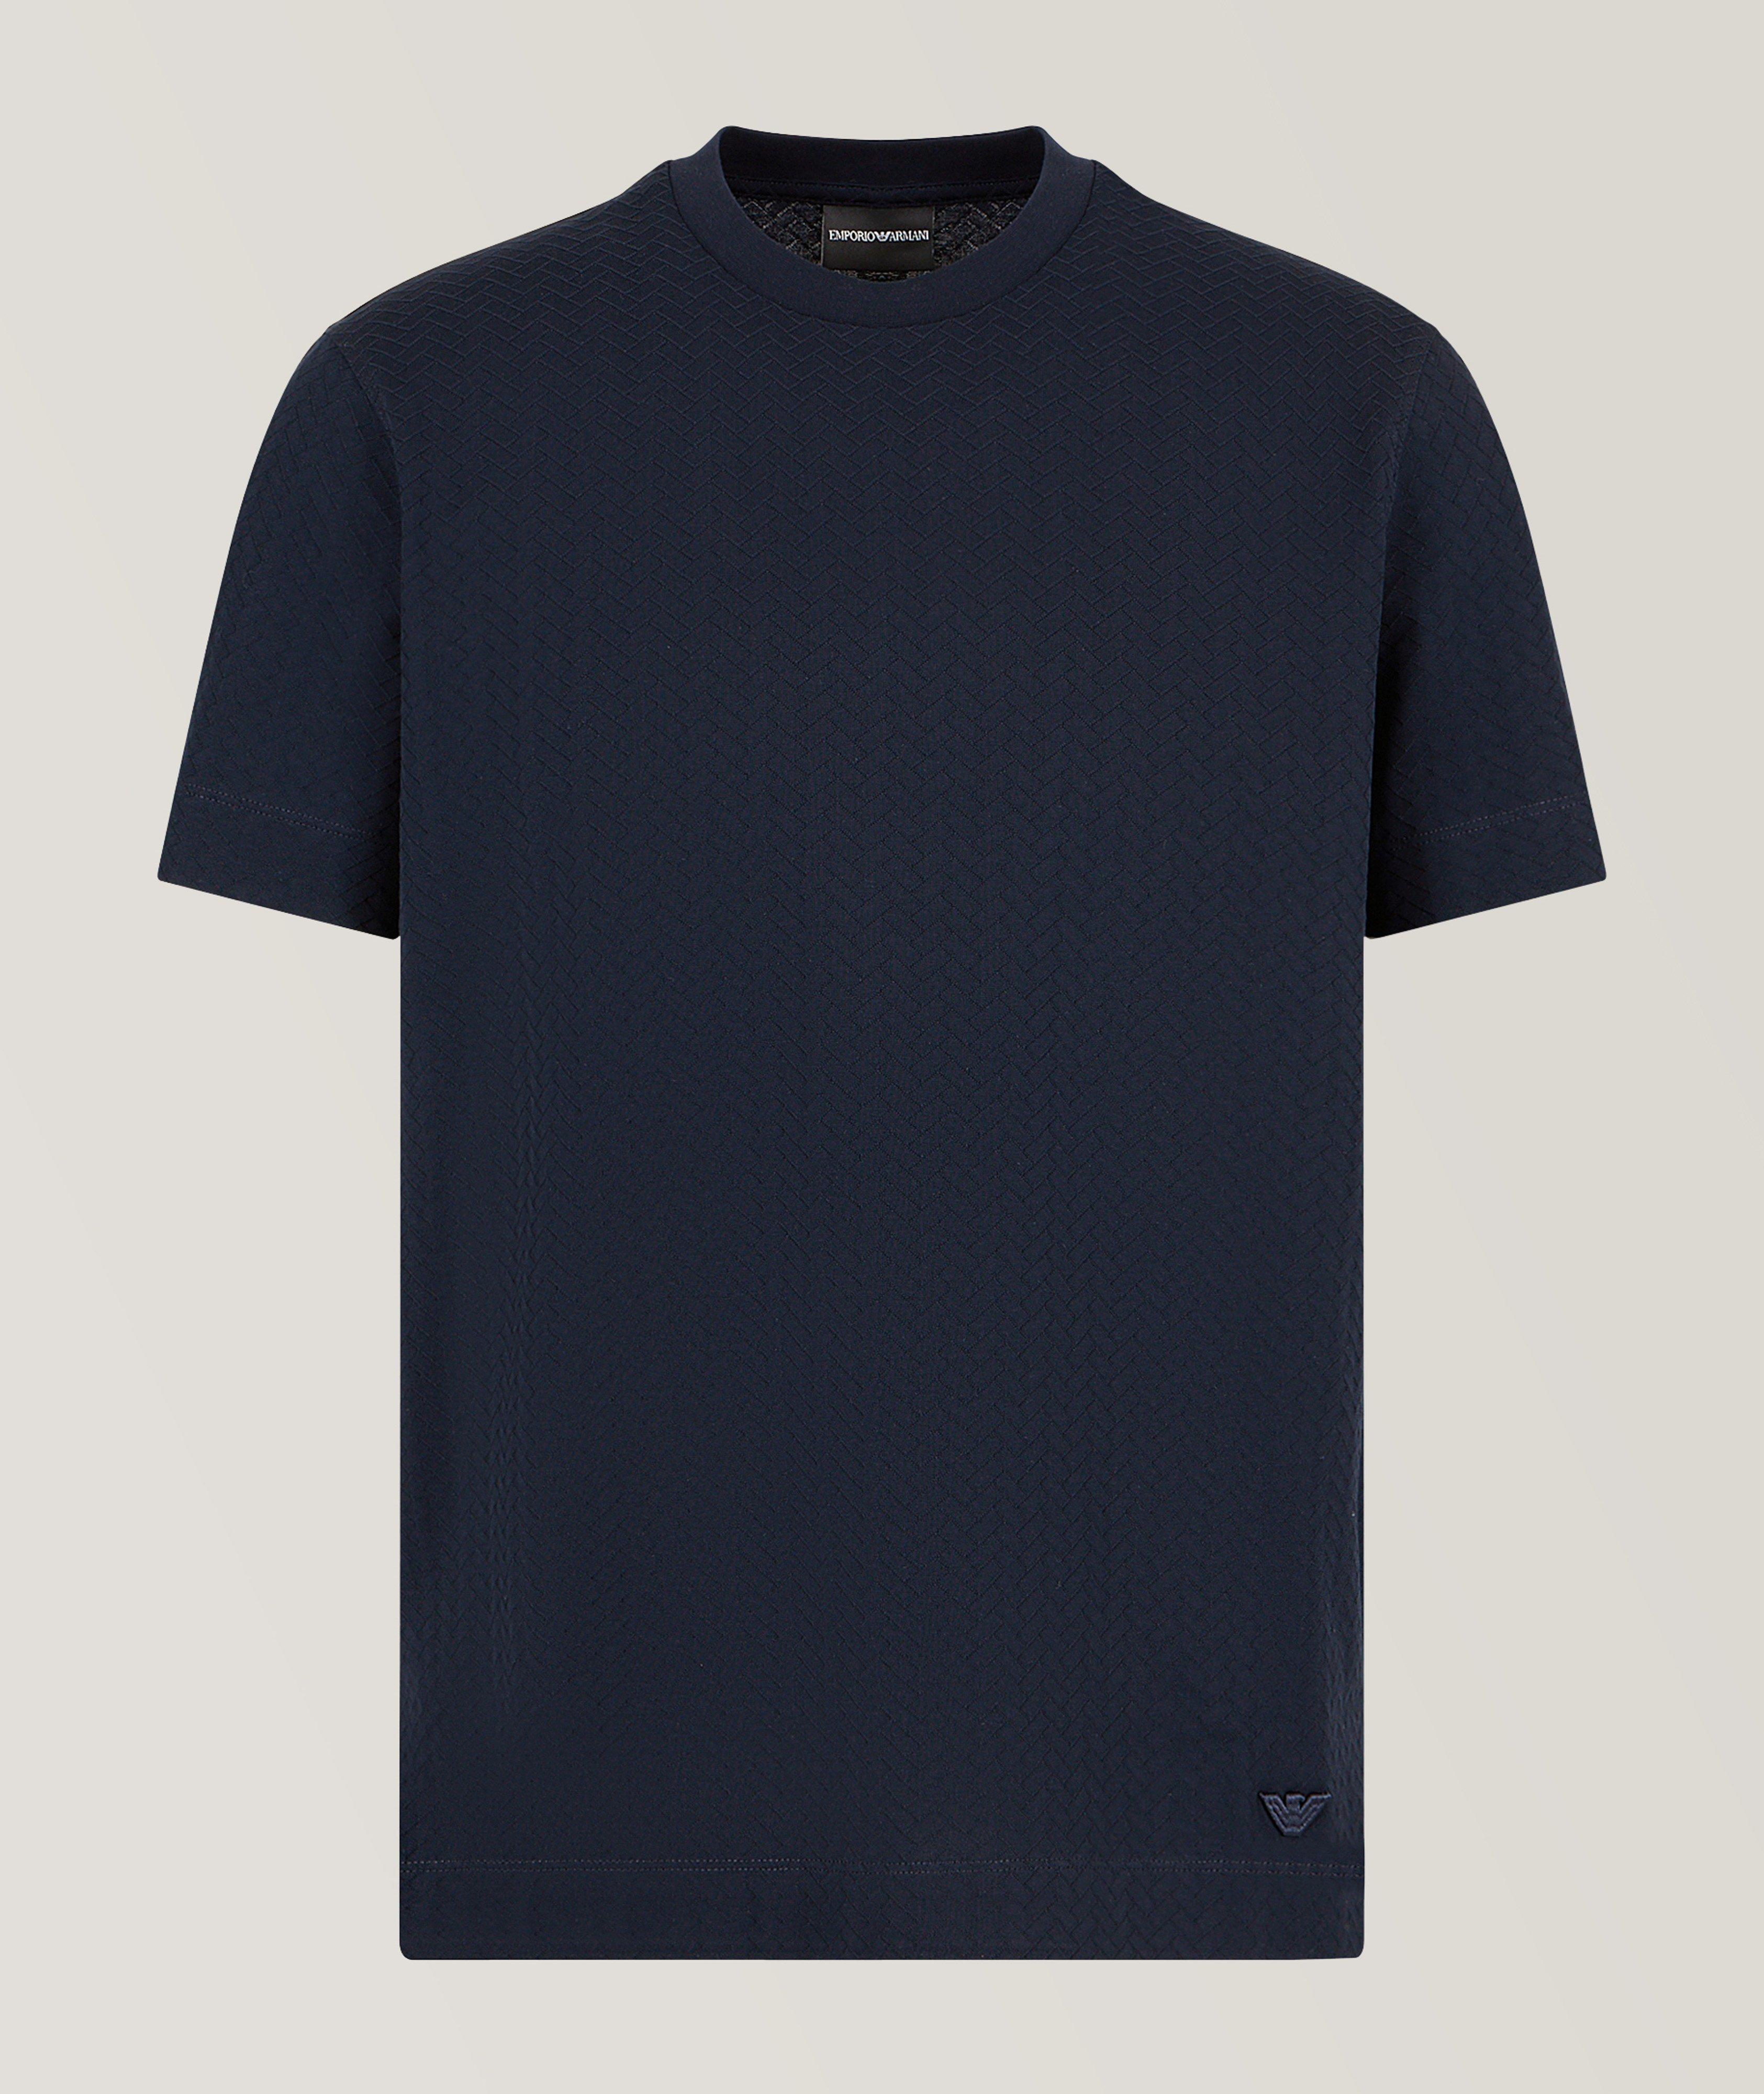 Chevron Stitch T-Shirt image 0